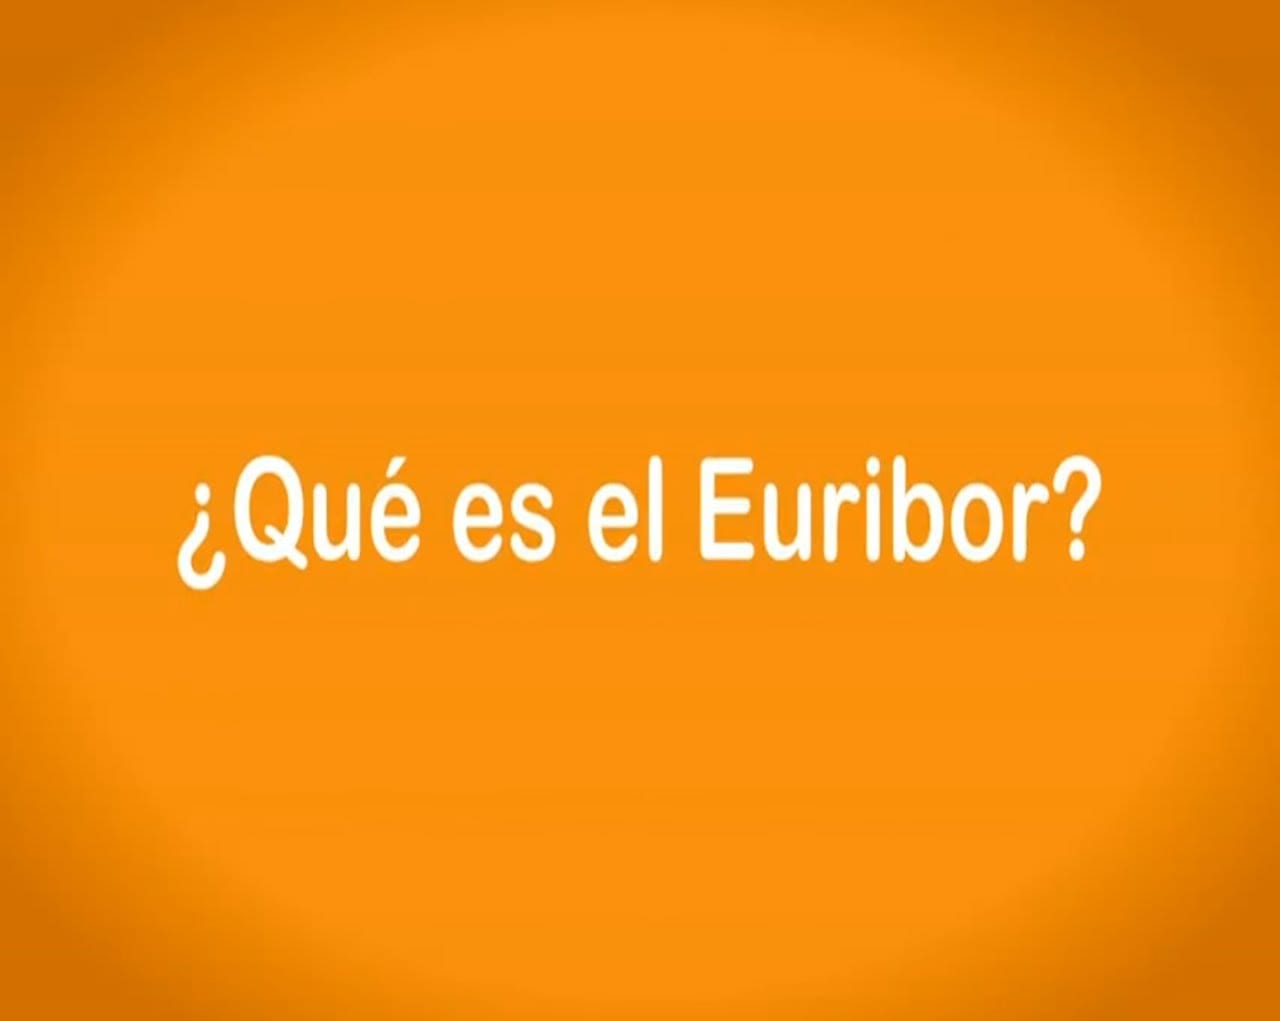 ¿Qué es el Euribor?